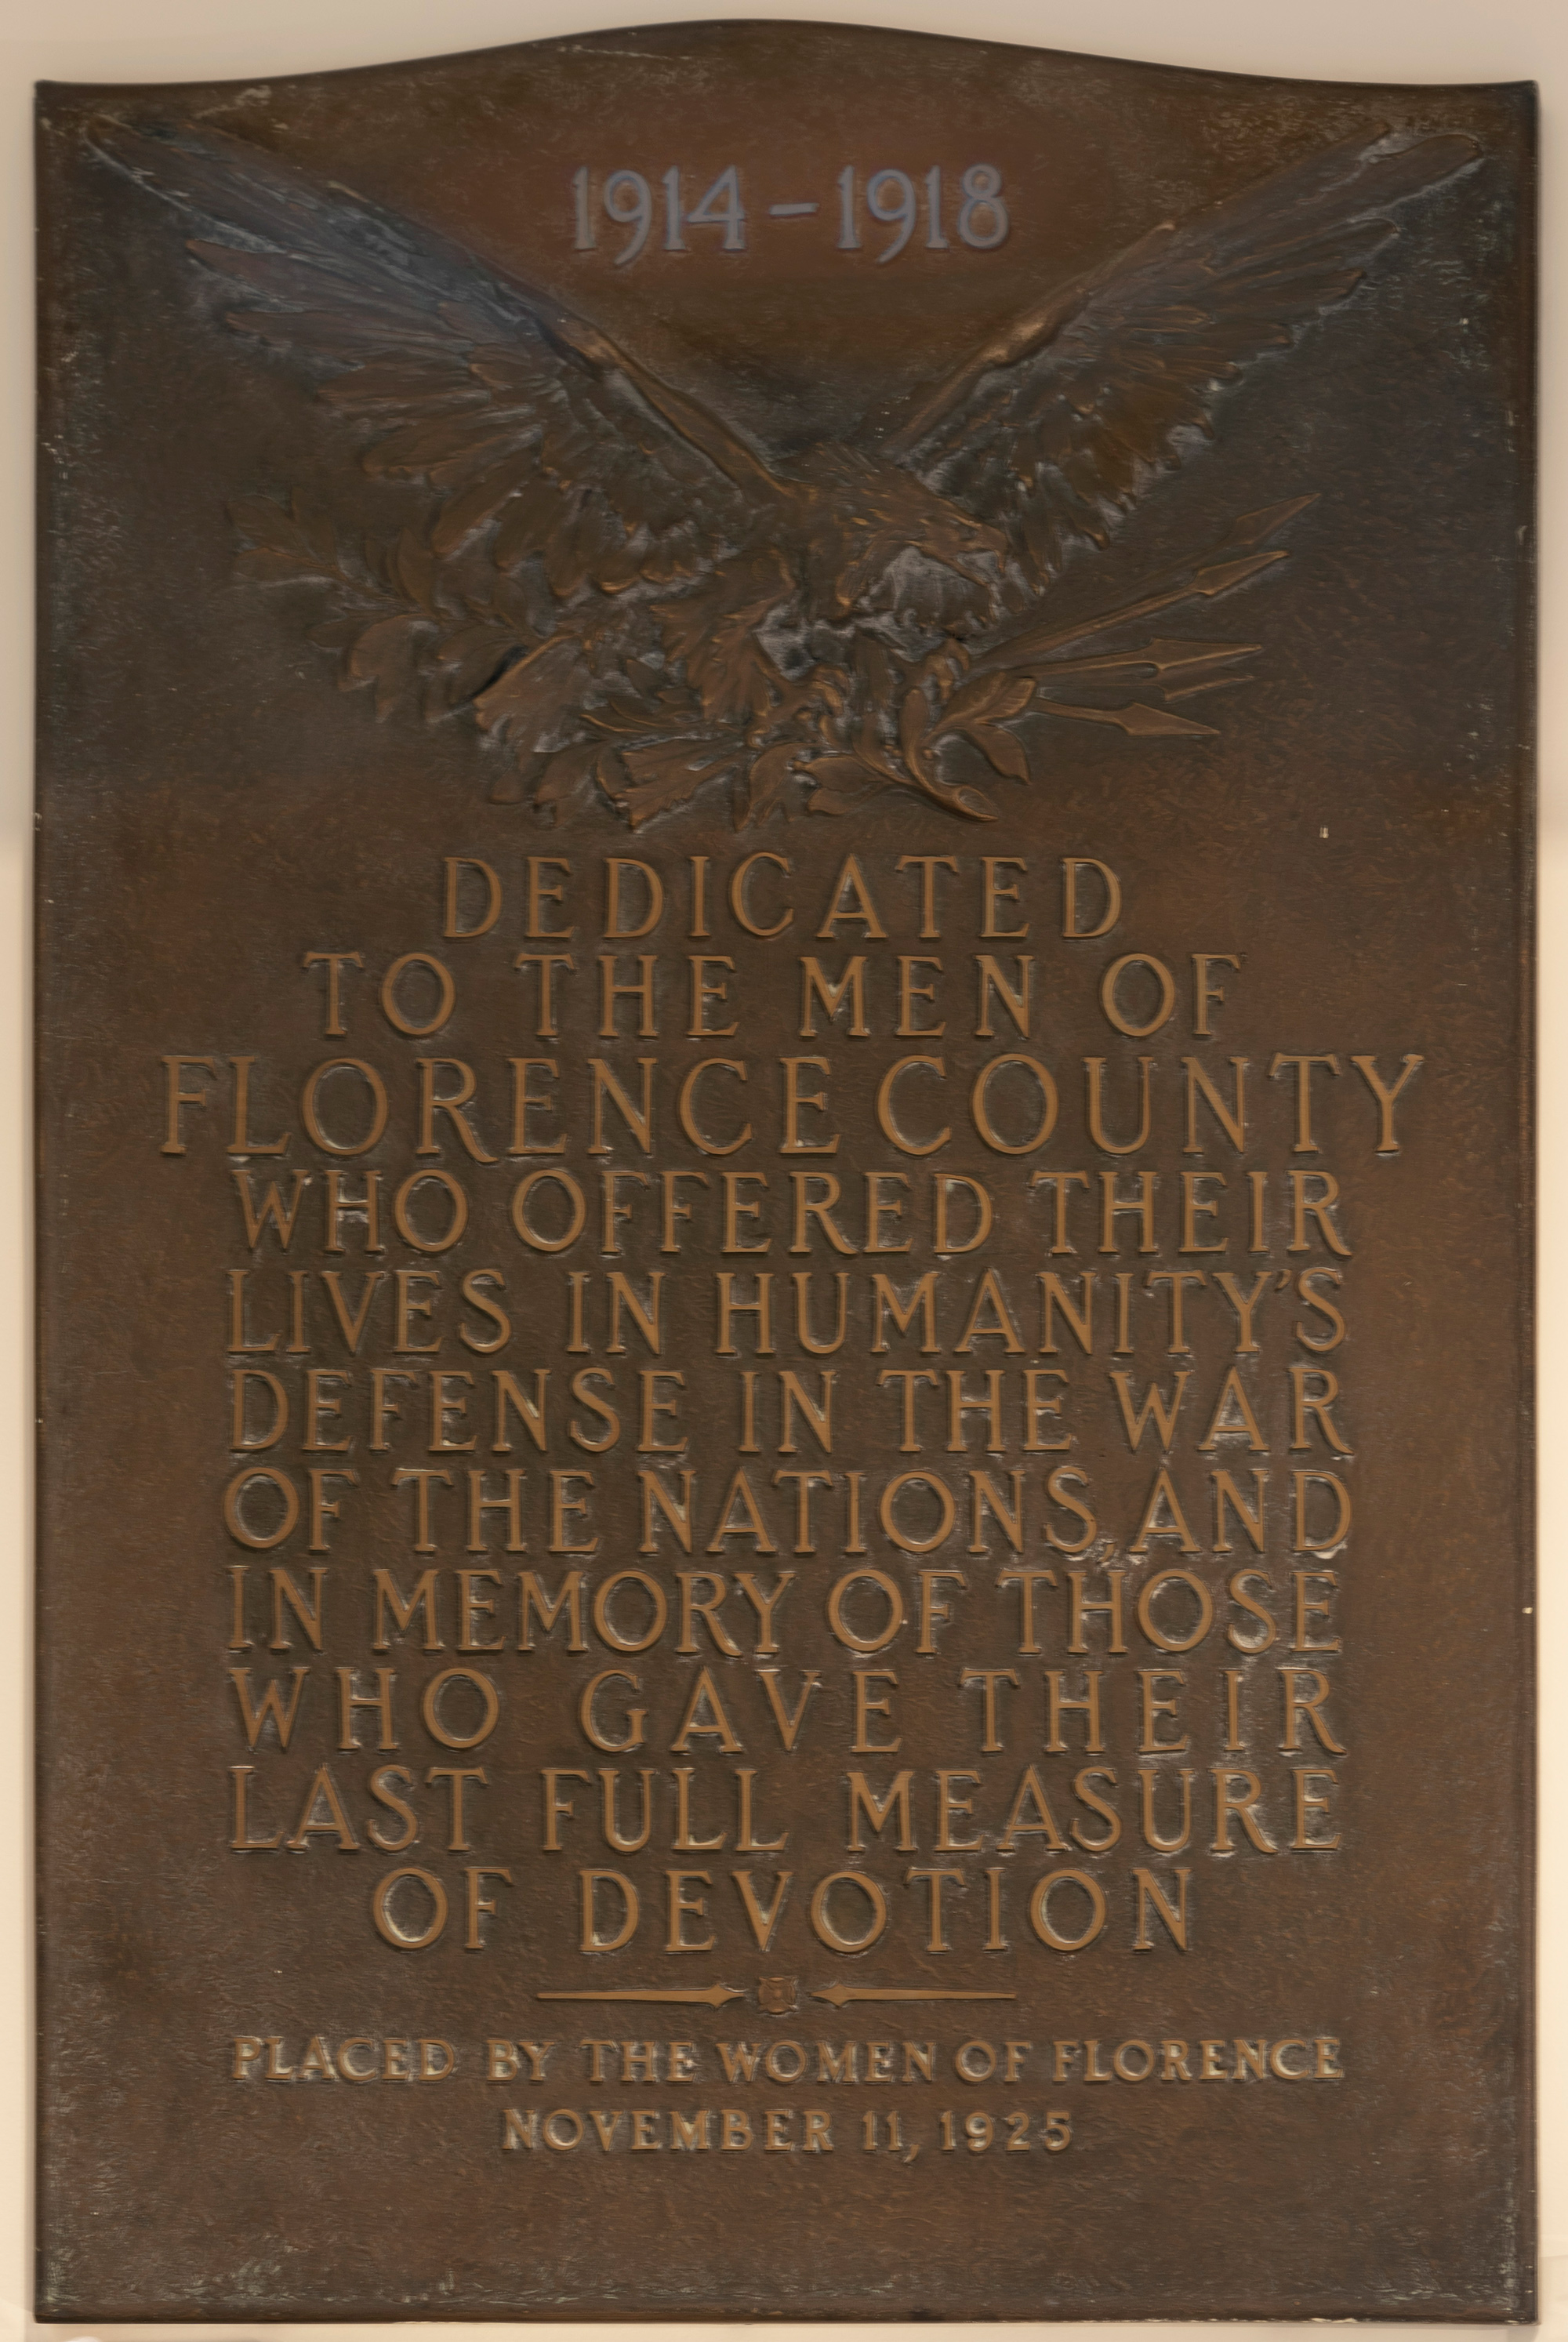 WWI memorial plaque